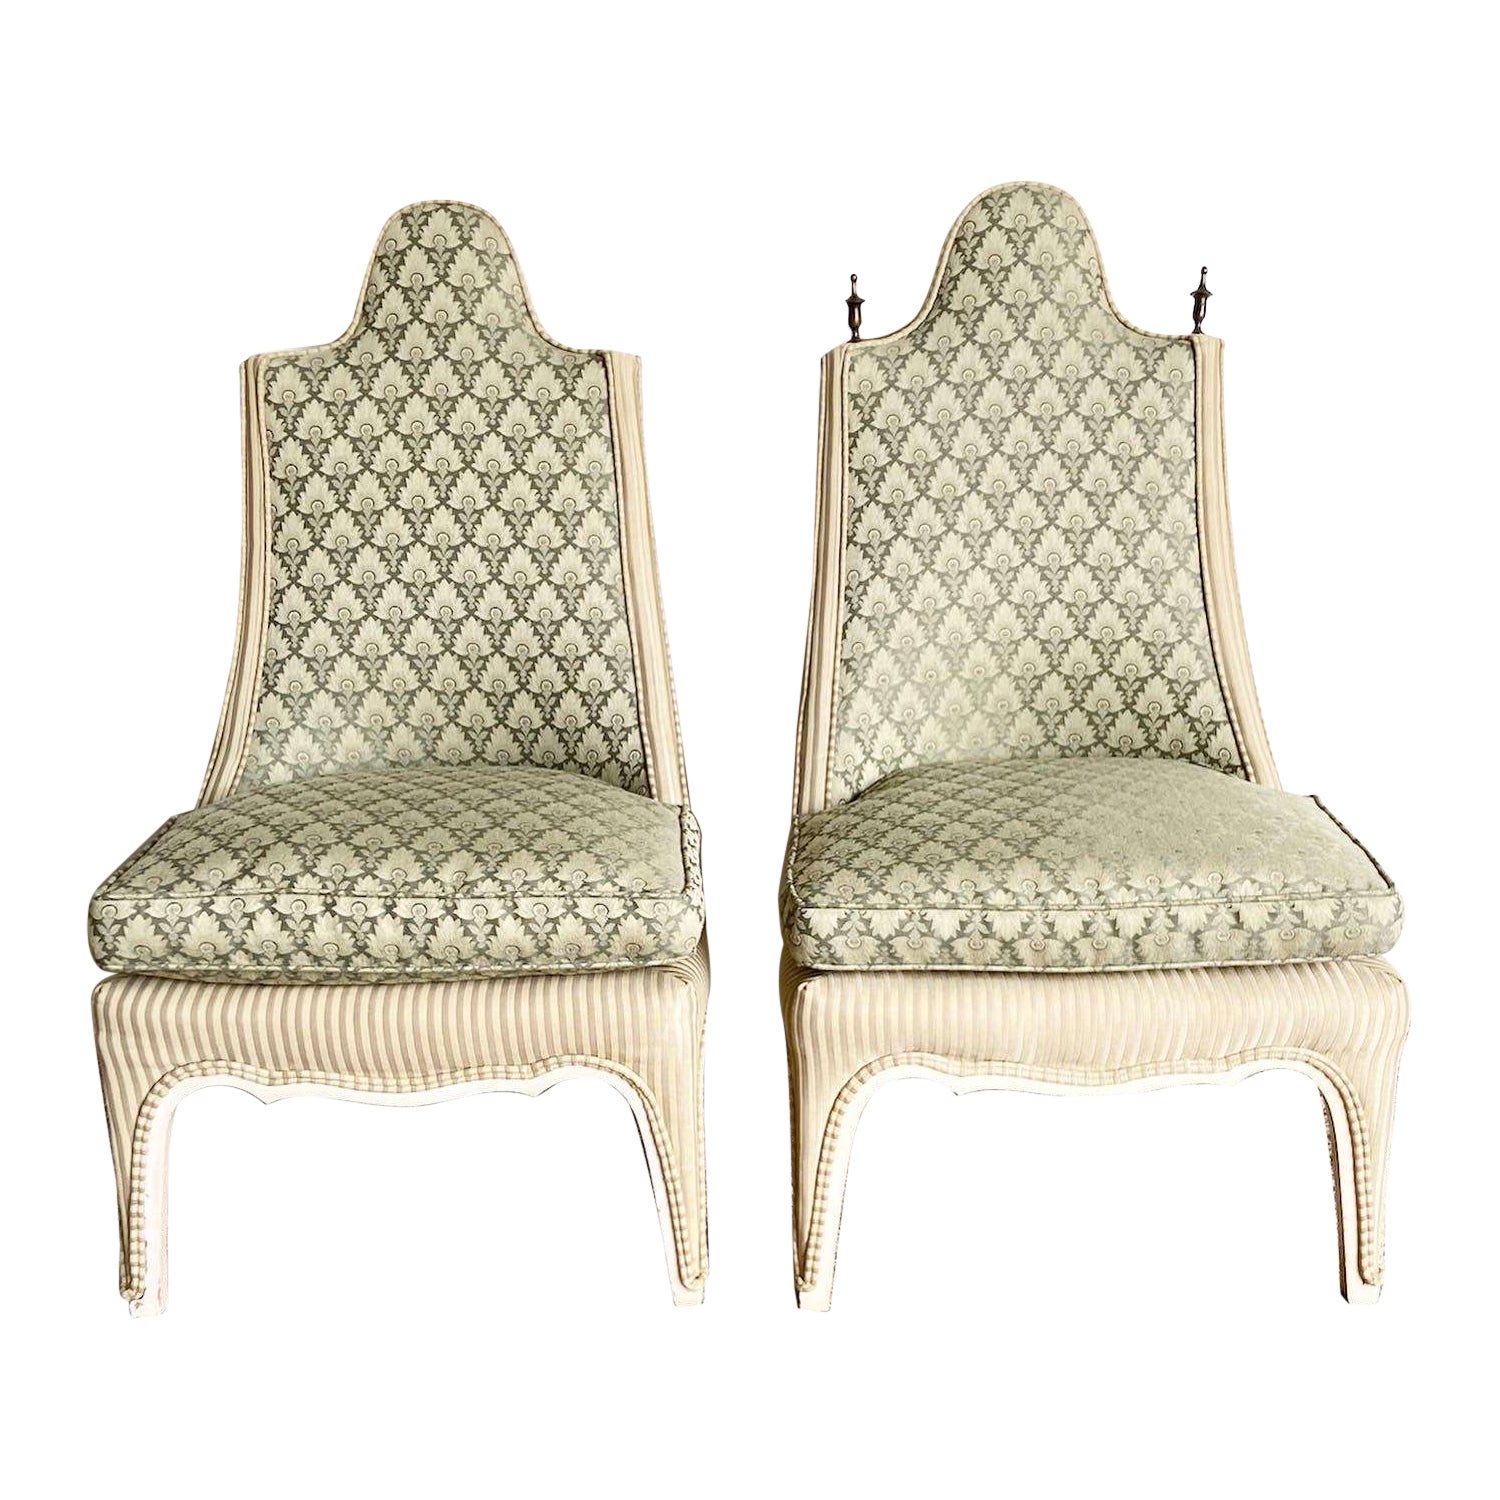 Regency-Stühle mit grünem und braunem Akzent – ein Paar